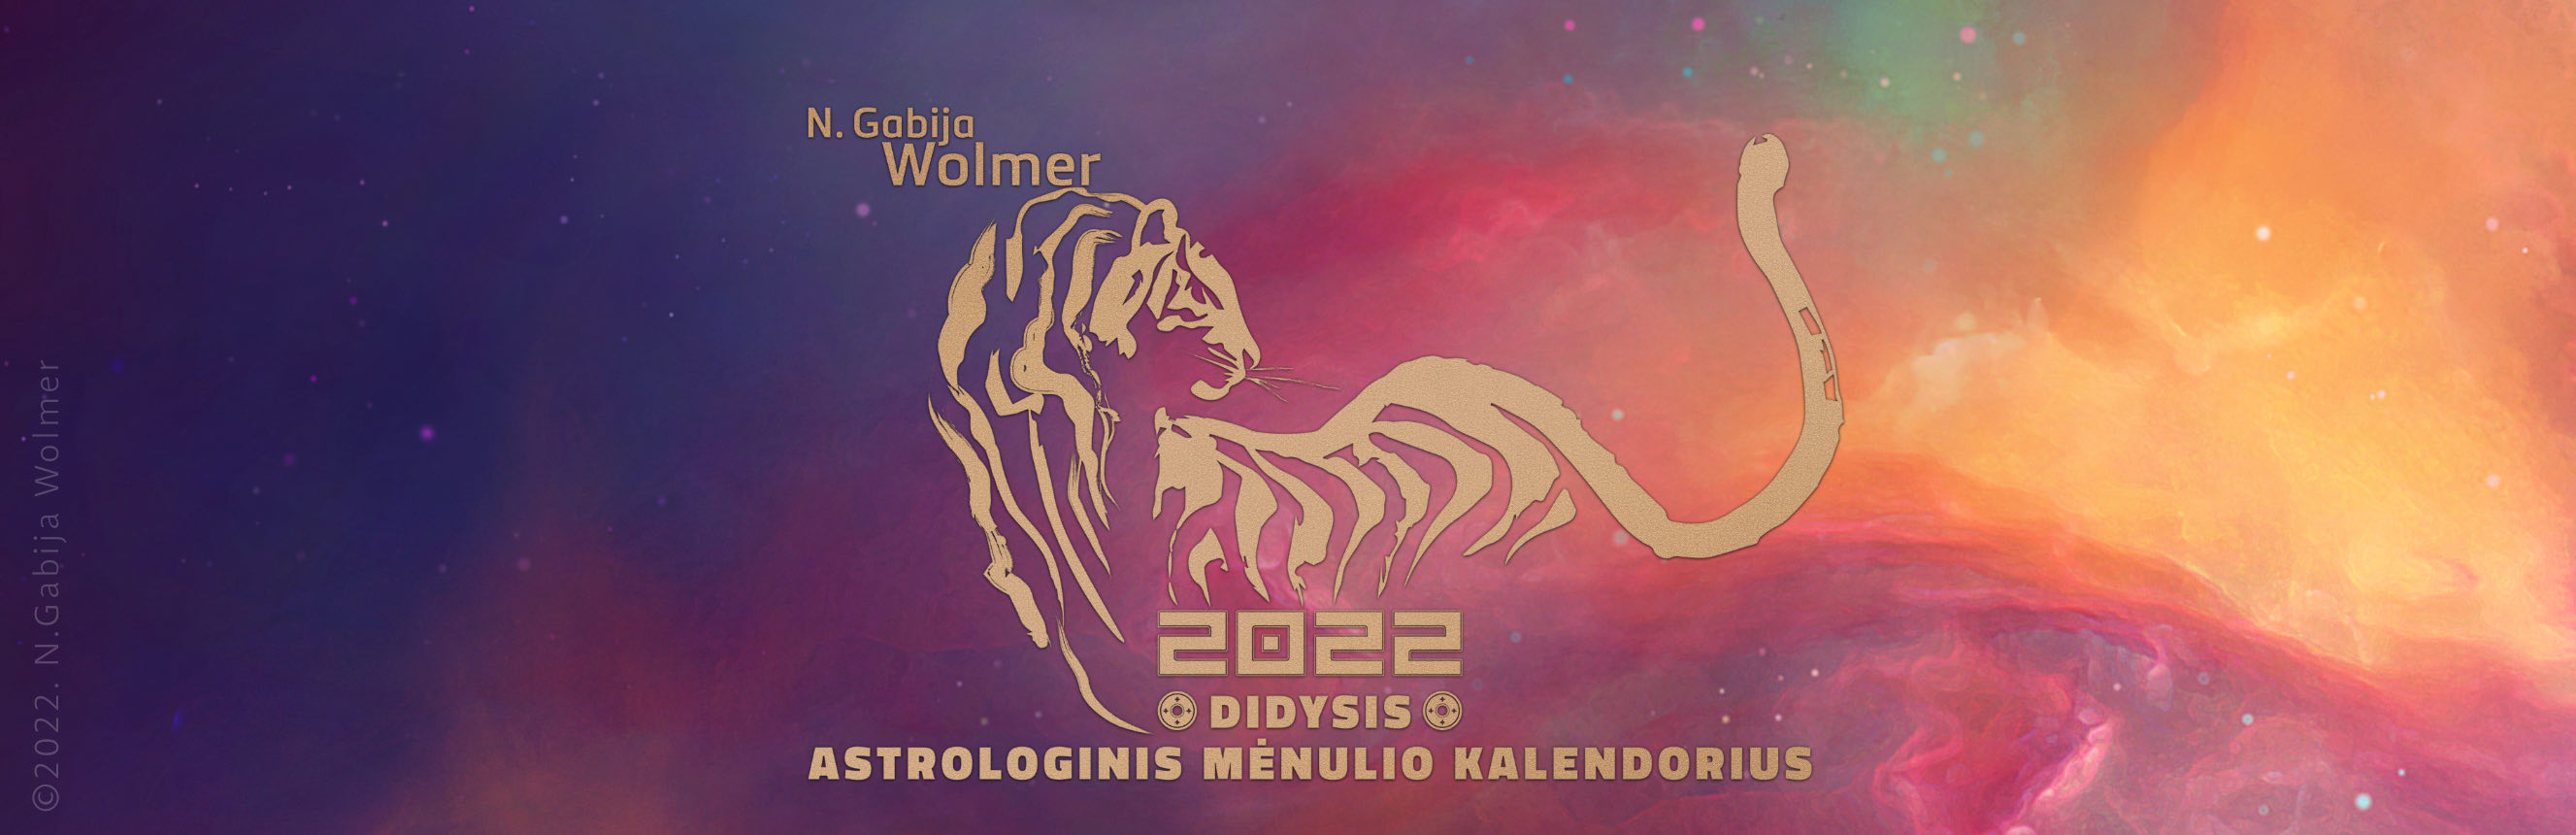 N.Gabija Wolmer. 2022 Didysis astrologinis Mėnulio kalendorius